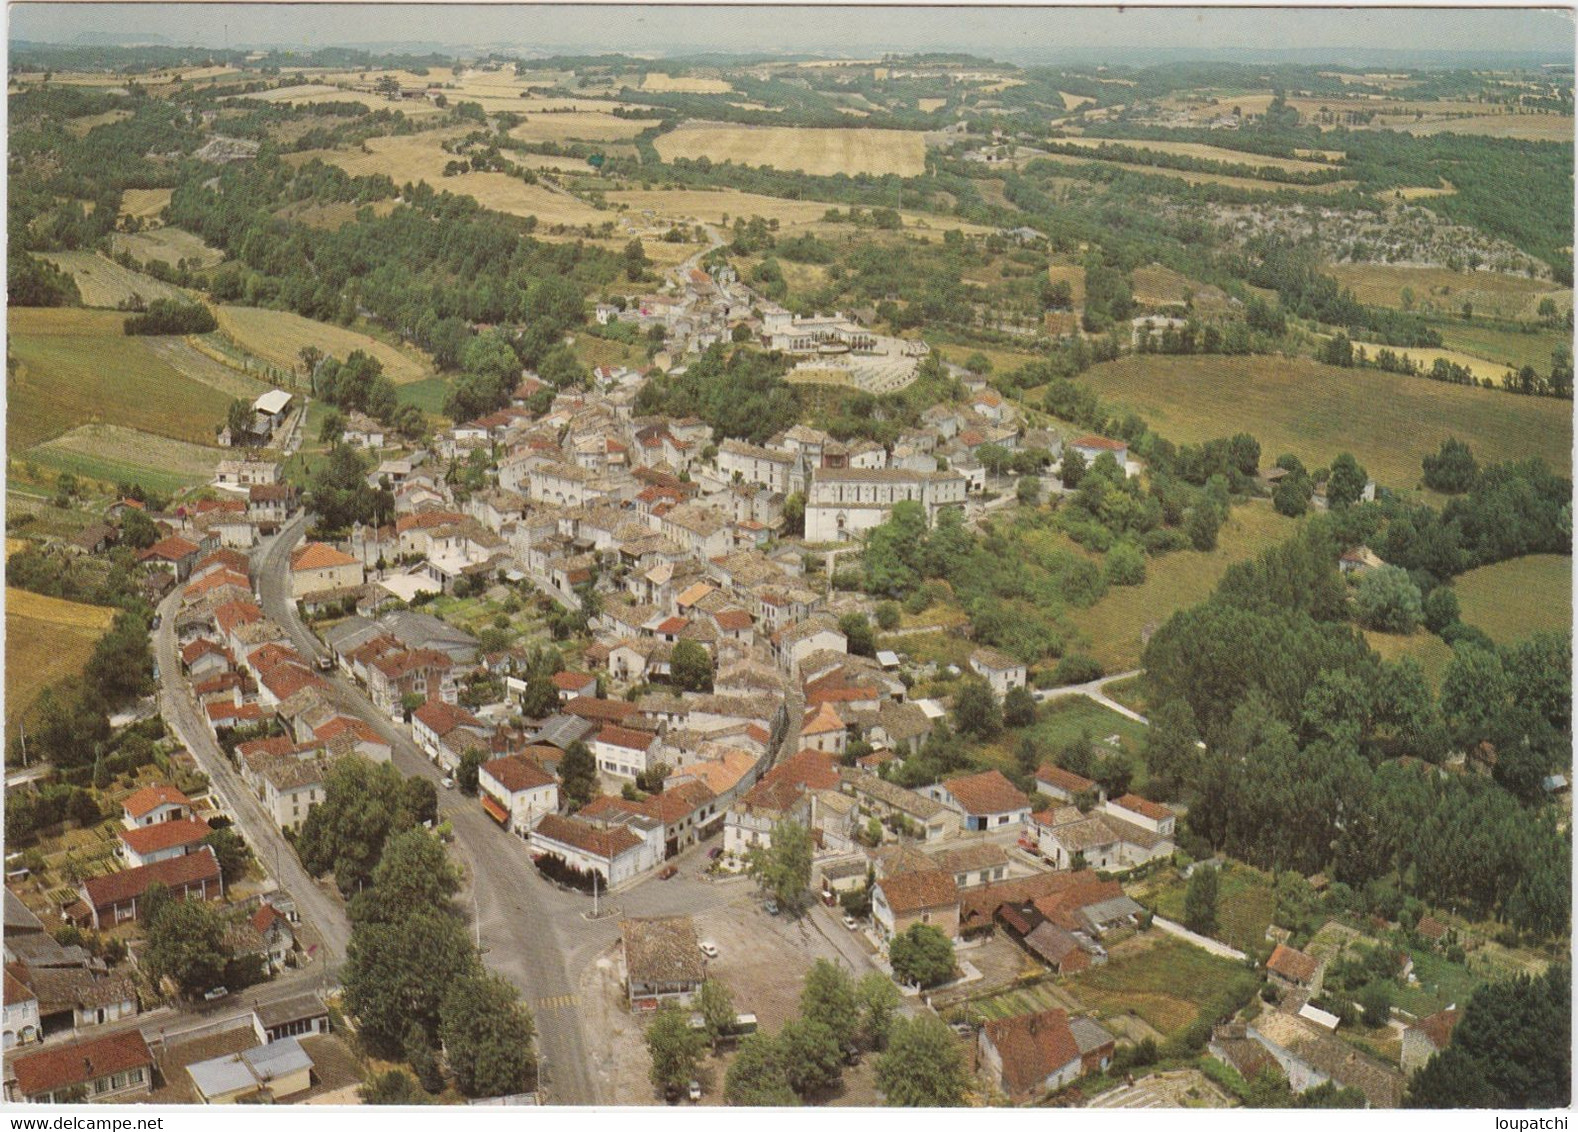 MONTAIGU DE QUERCY Son Village Et Chateau - Montaigu De Quercy